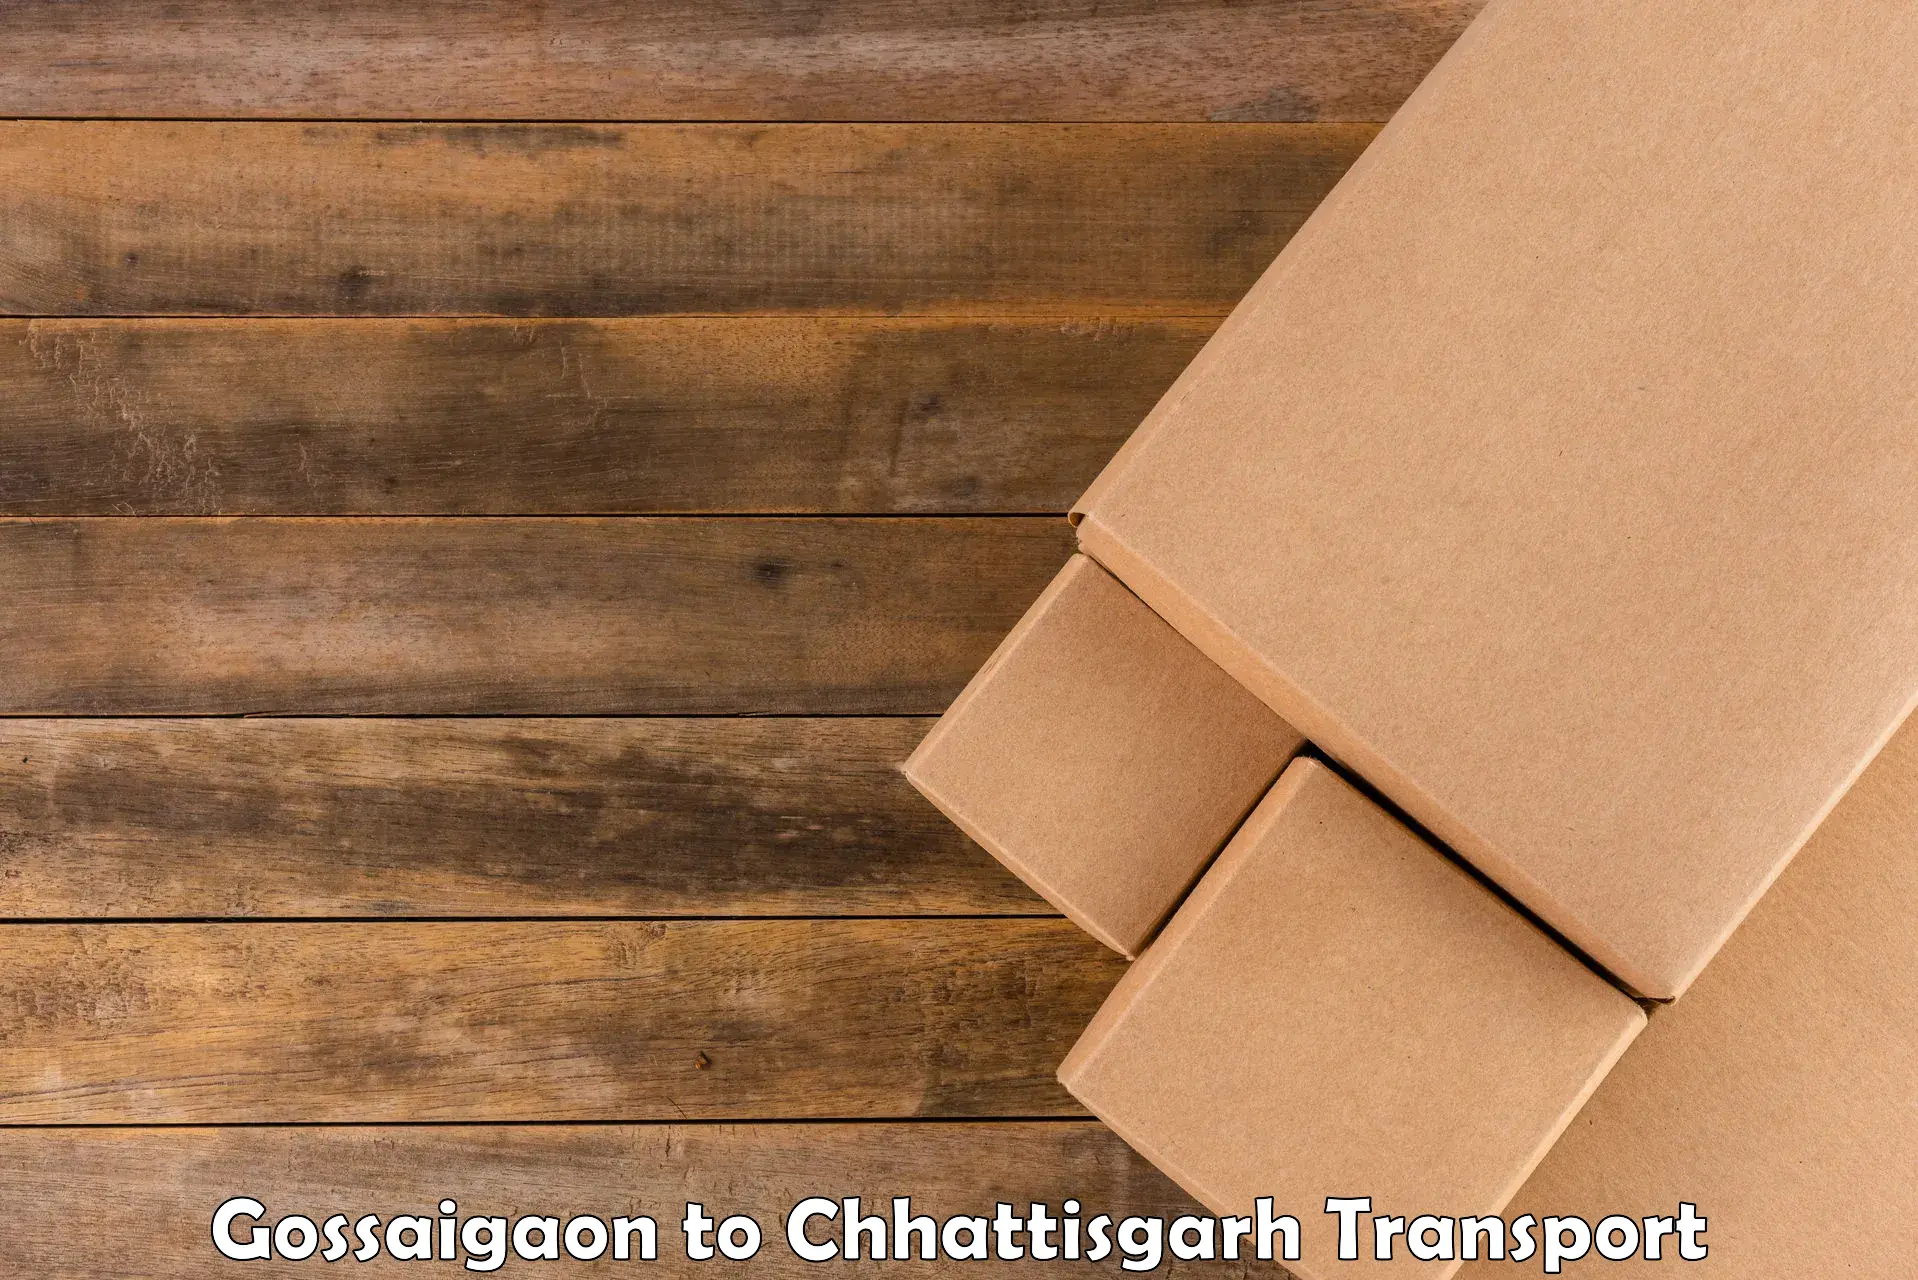 Nationwide transport services Gossaigaon to Raigarh Chhattisgarh